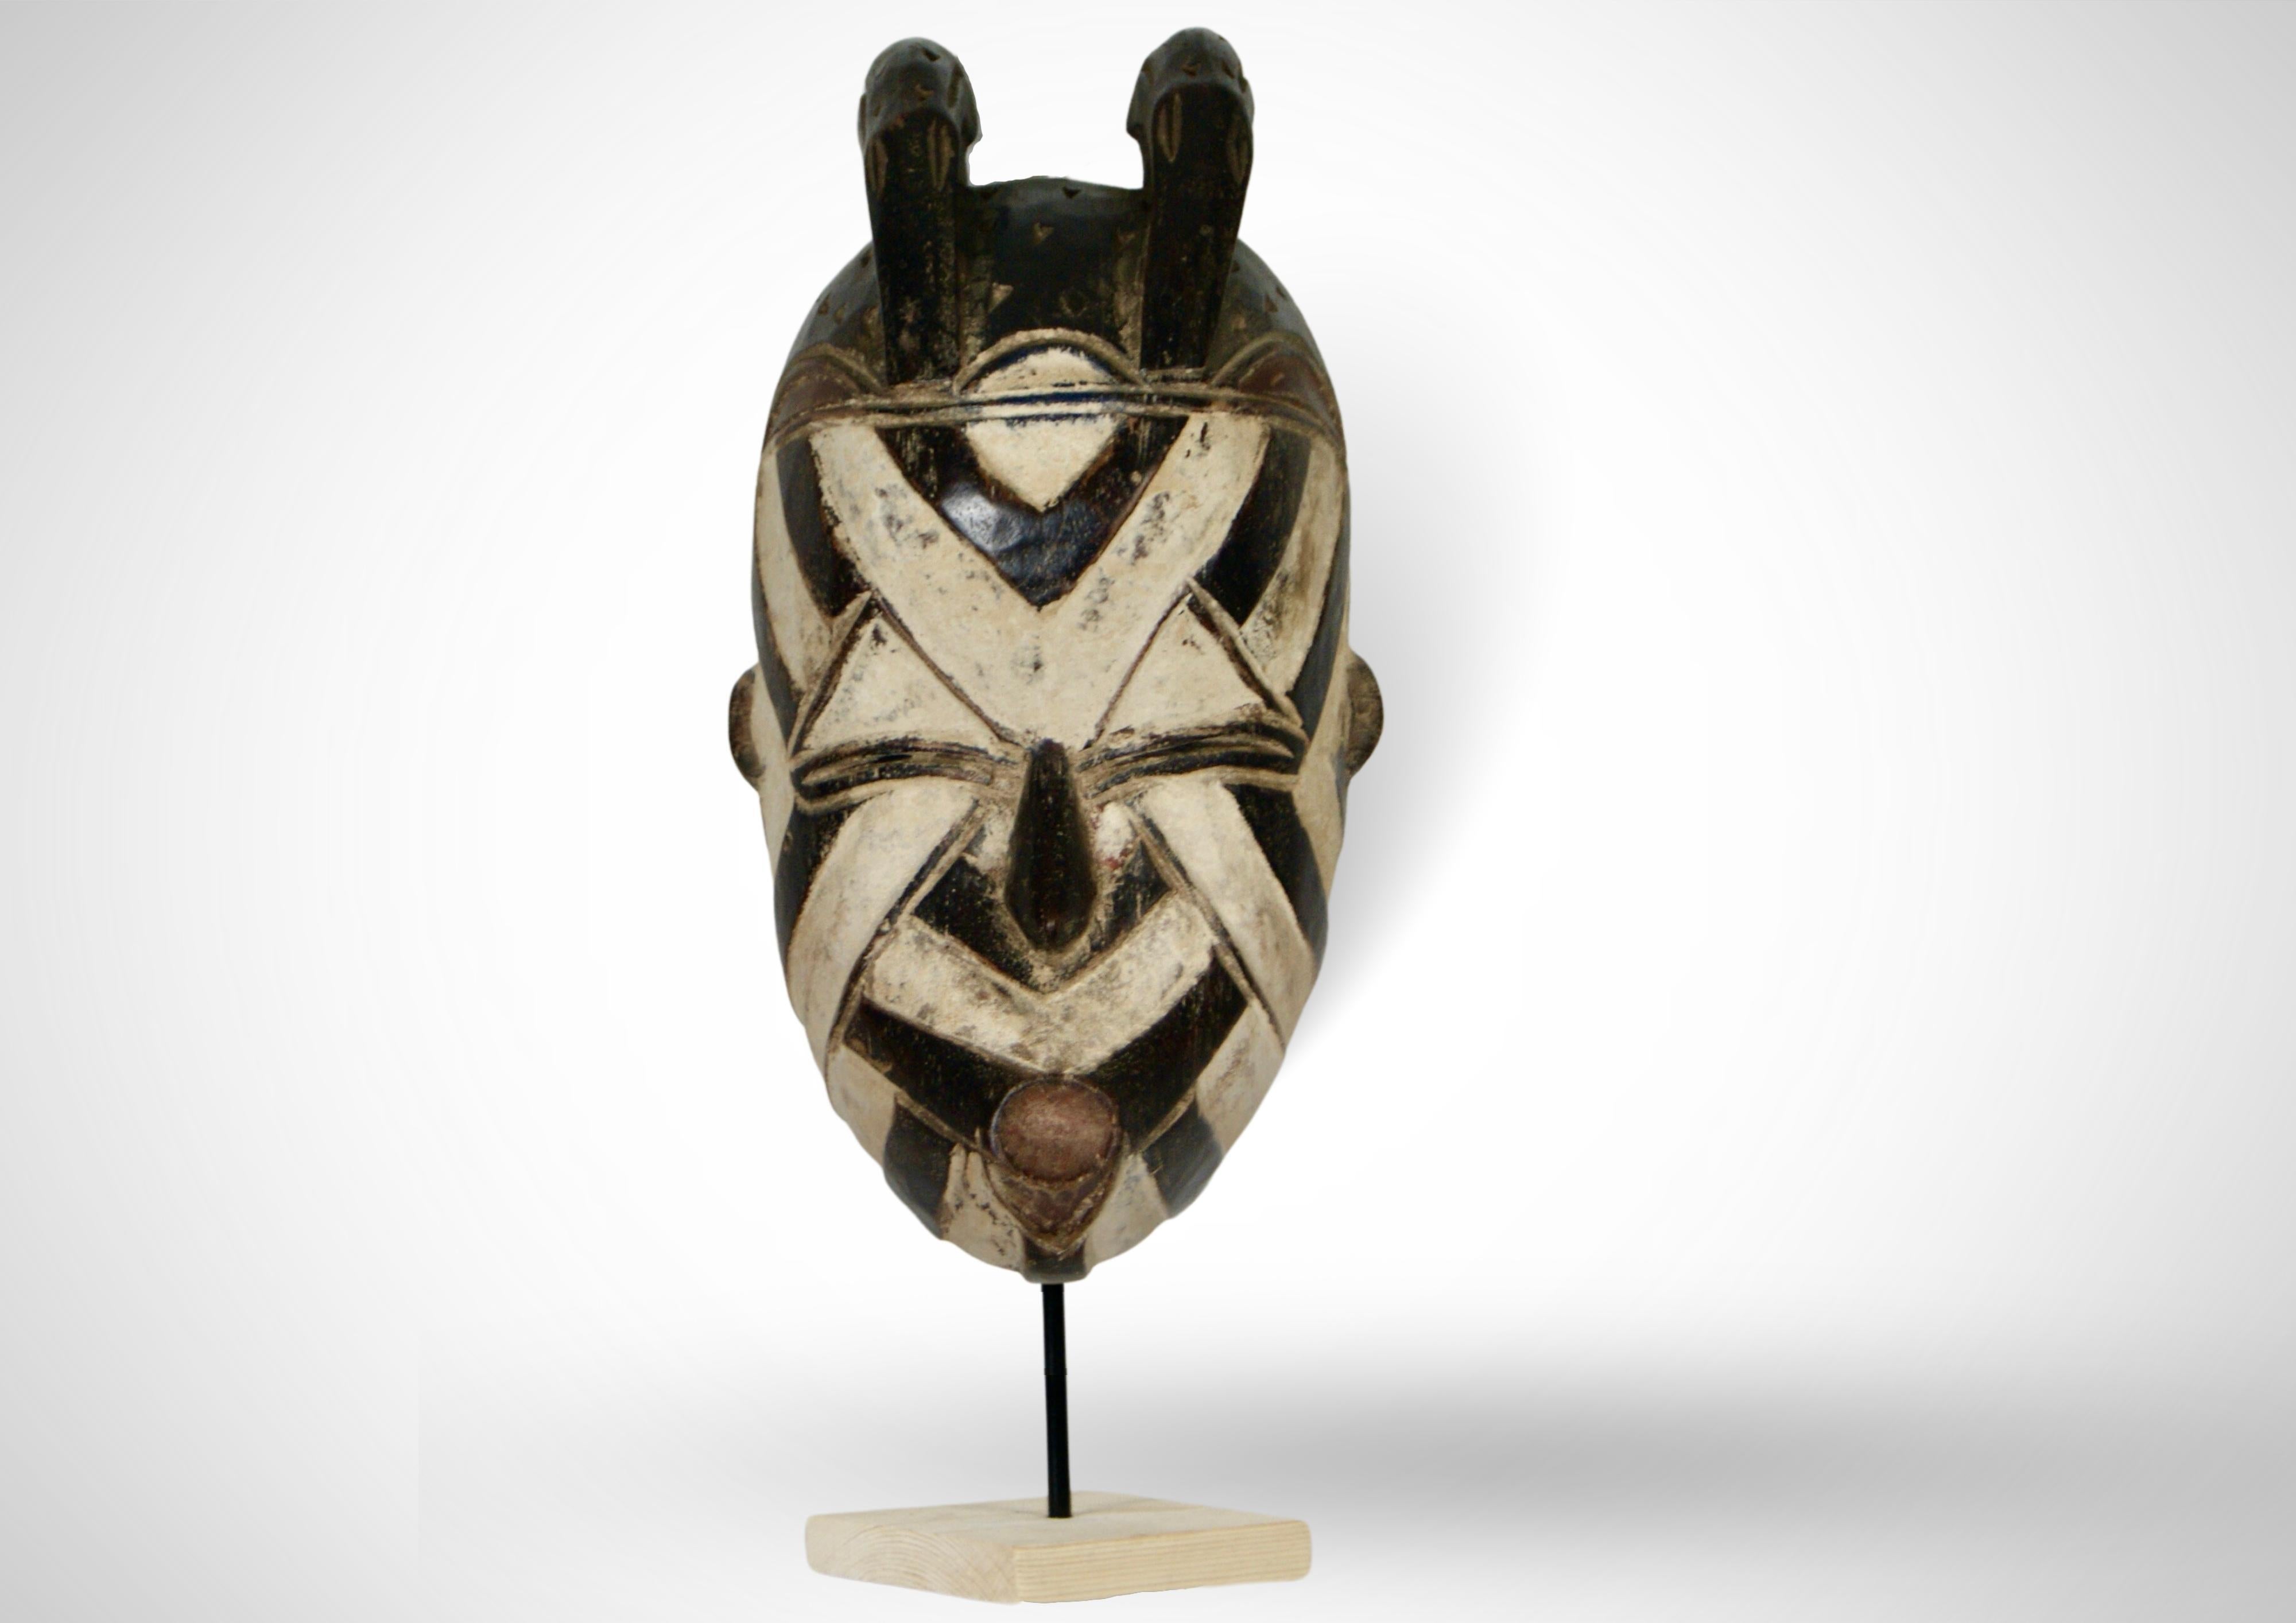 Angeboten wird eine Basangwe-Maske vom Volk der Songye in der Demokratischen Republik Kongo, ca. 1950er Jahre.
 
Die Maske hat die typische Gesichtsform der Basangwe-Maske.
Oben ist ein Paar stilisierter Vögel mit gestanzten Dreiecken zu sehen. Ihre